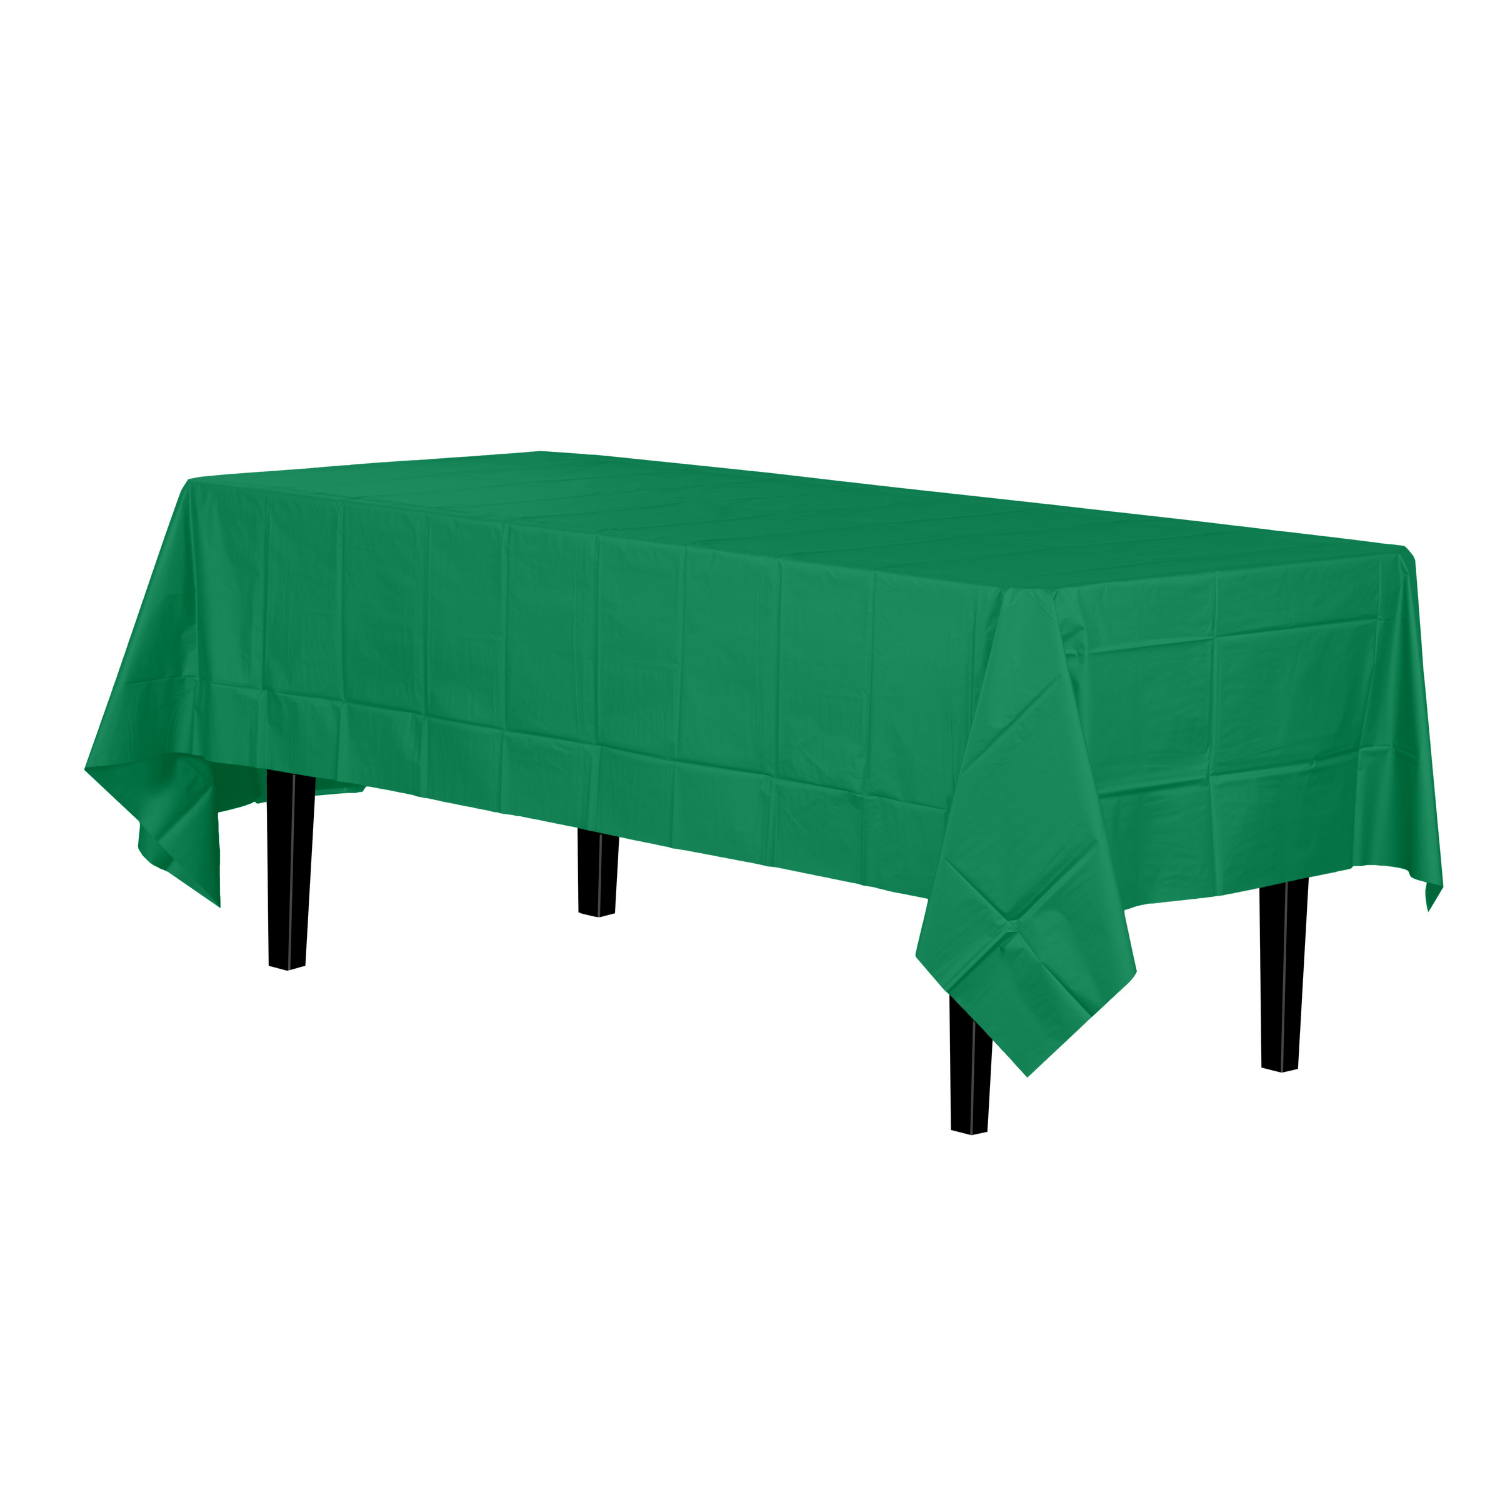 Premium Emerald Green Plastic Tablecloth | 96 Count